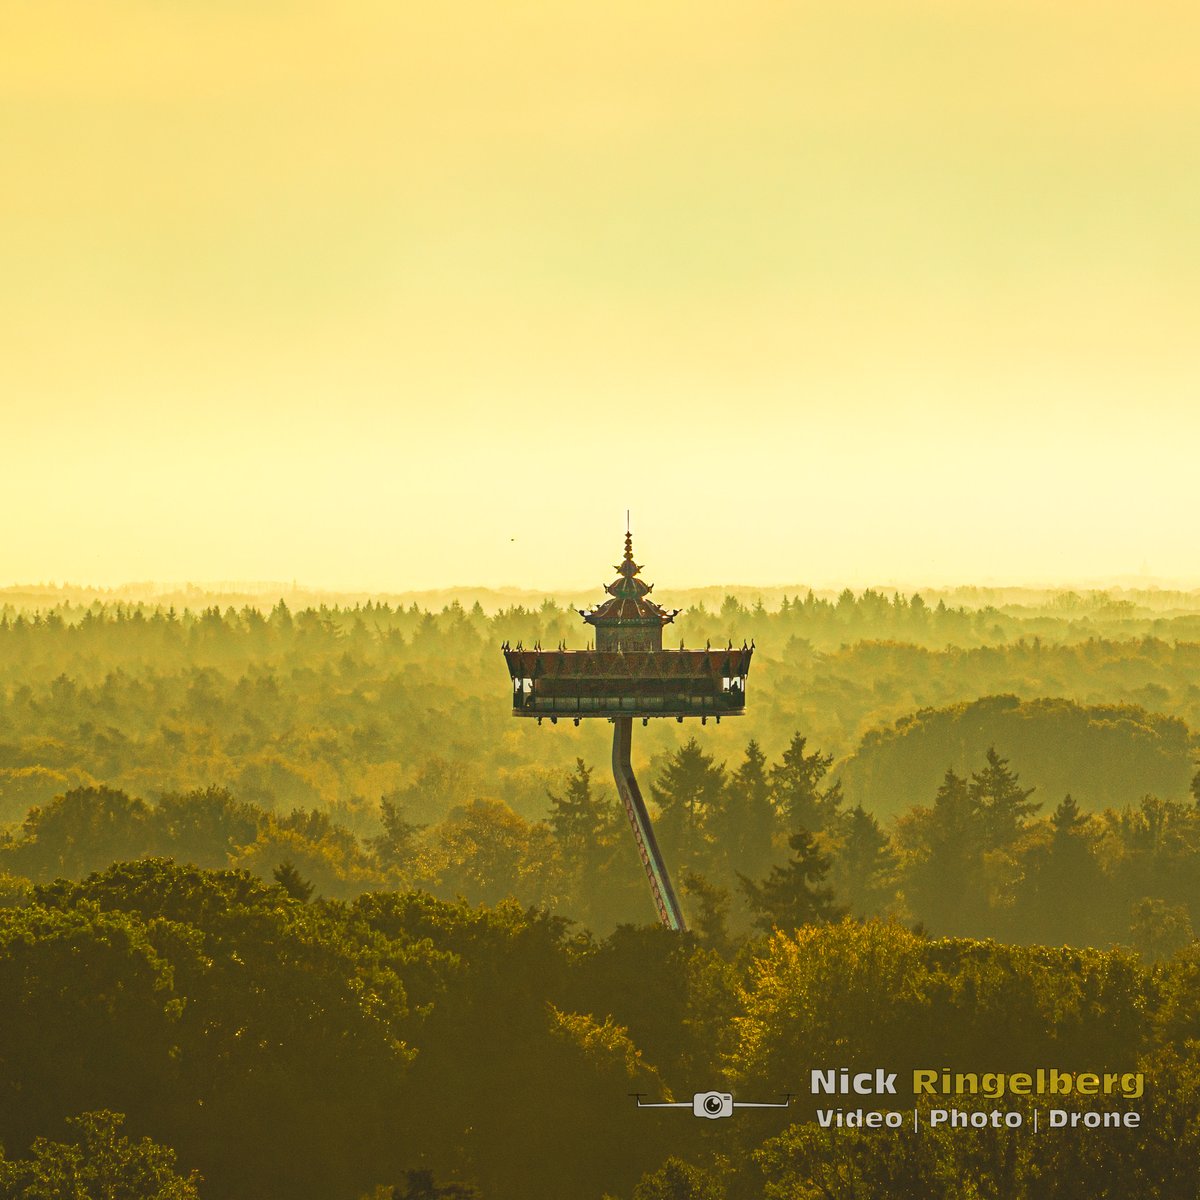 In de morgen heb je altijd een mooi mistig uitzicht!
-
#droneshotoftheday #dronepicture
#aerialphotoshoot #aerialpicture
#aerialshot #aerialphoto #efteling #pagode